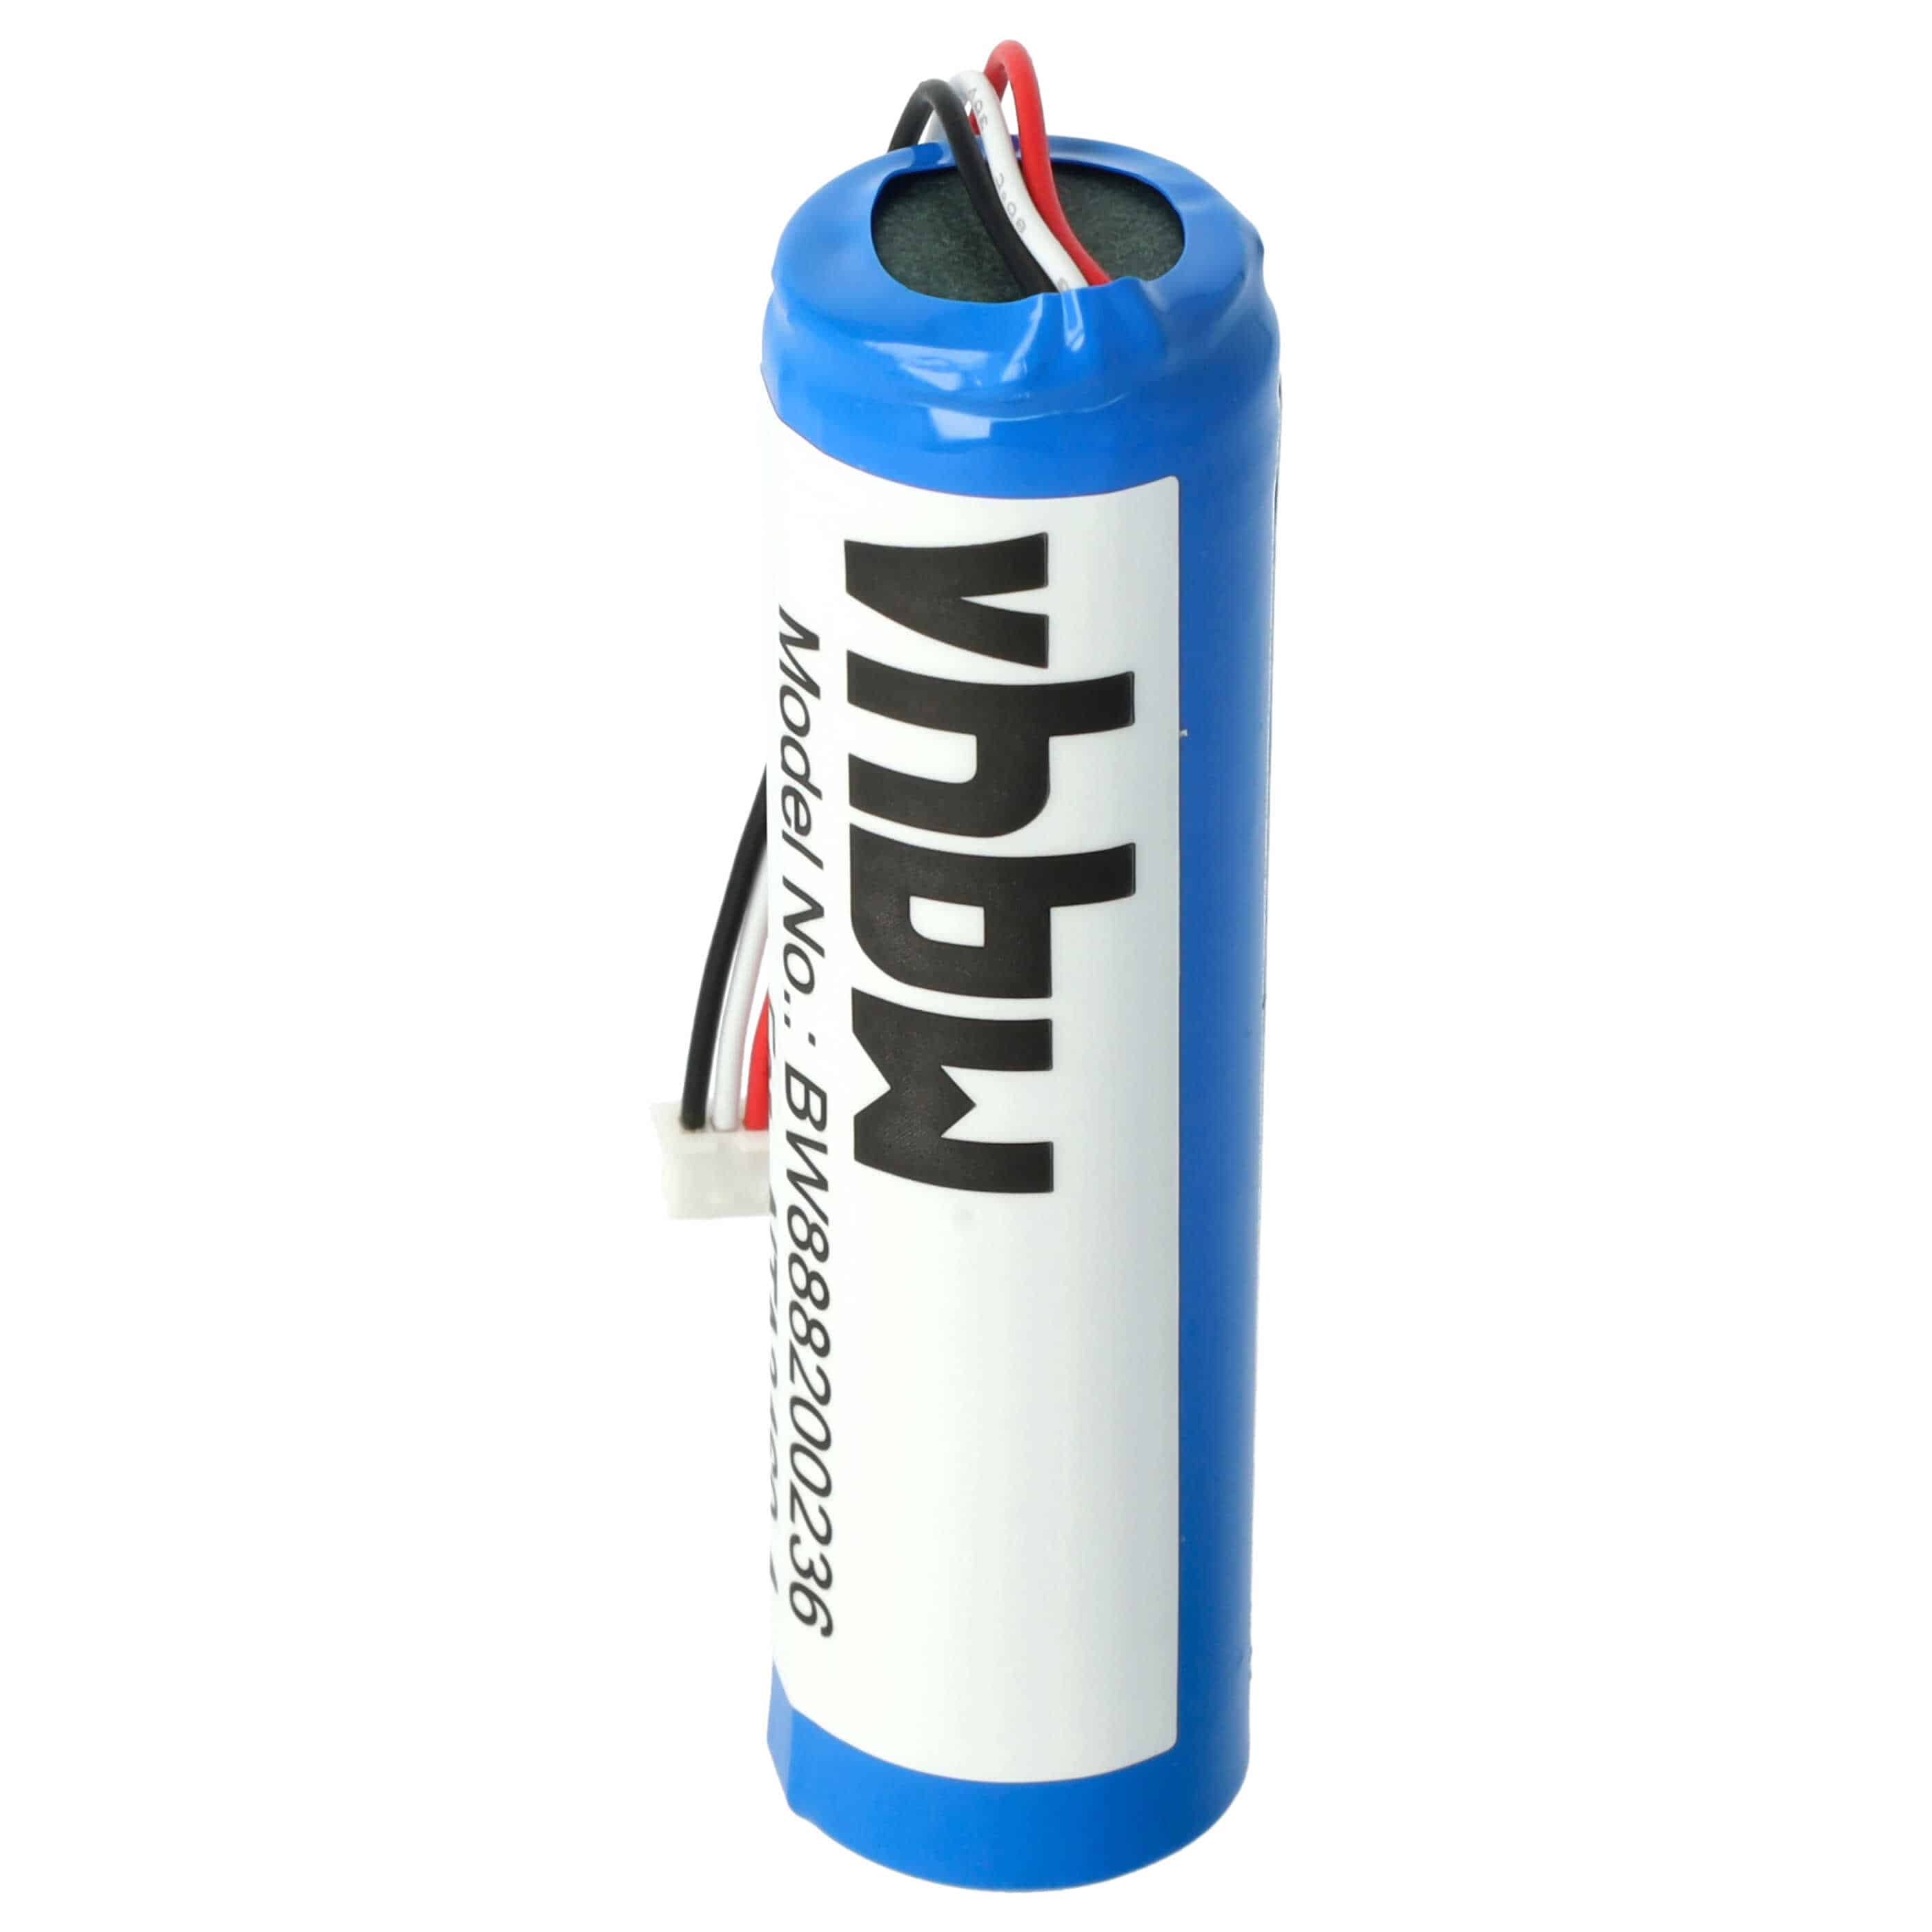 Batterie remplace Philips NTA3459-4, NTA3460-4 pour moniteur bébé - 3000mAh 3,7V Li-ion